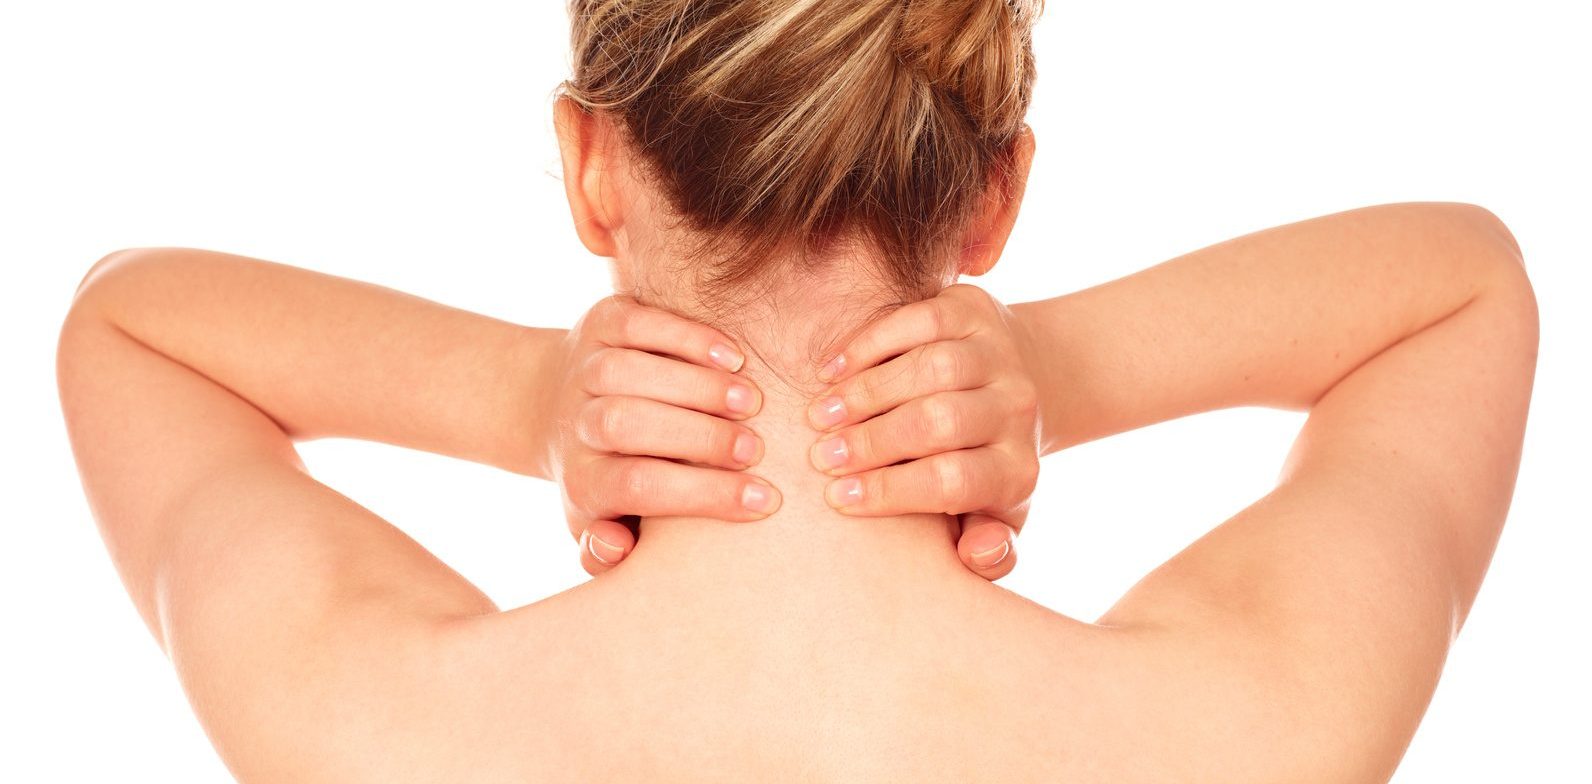 Massage als Alternative zu Schmerzmitteln